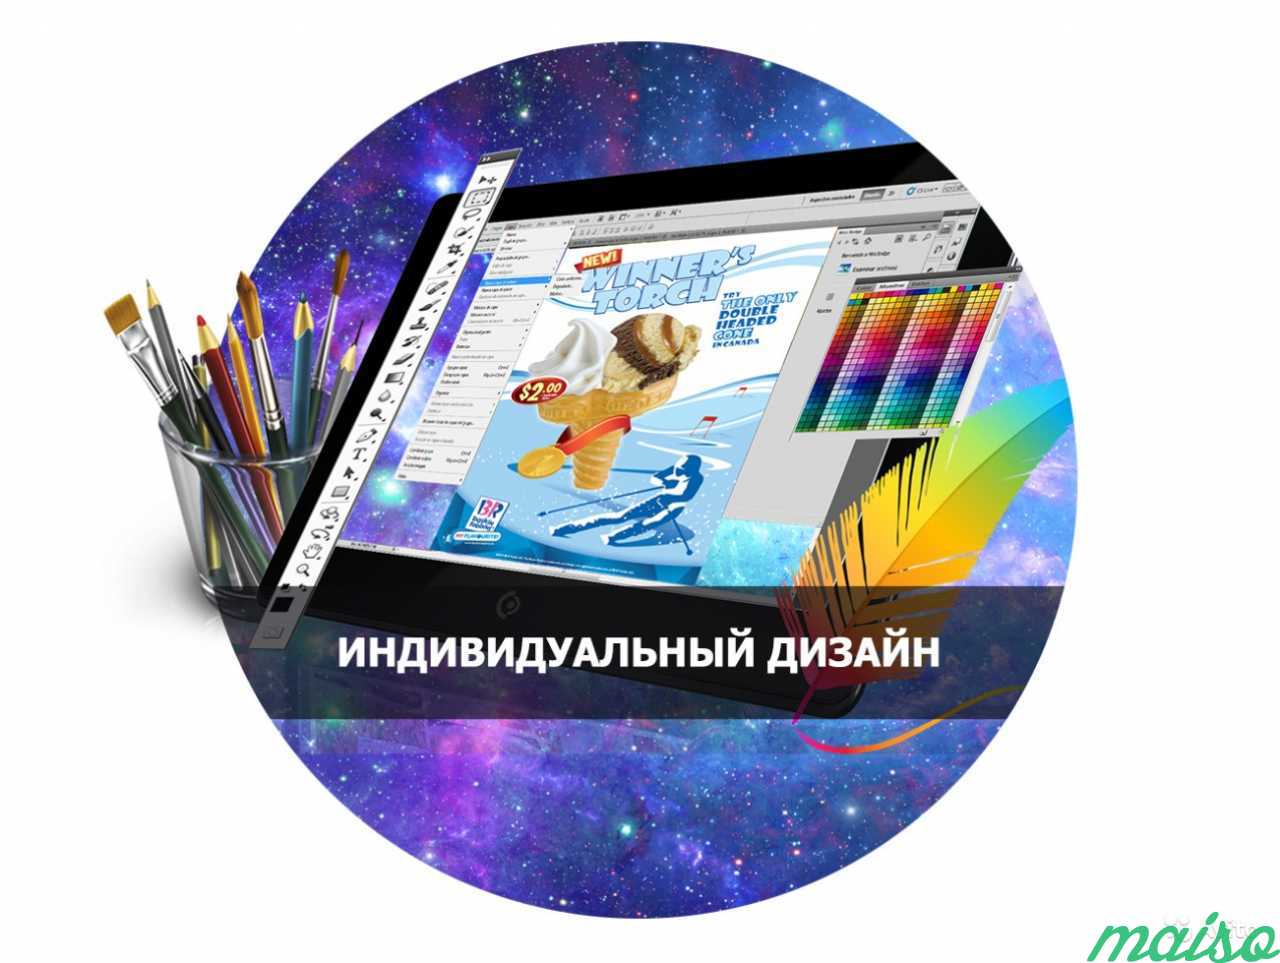 Создание сайтов и landing-page. Частный веб-мастер в Санкт-Петербурге. Фото 2